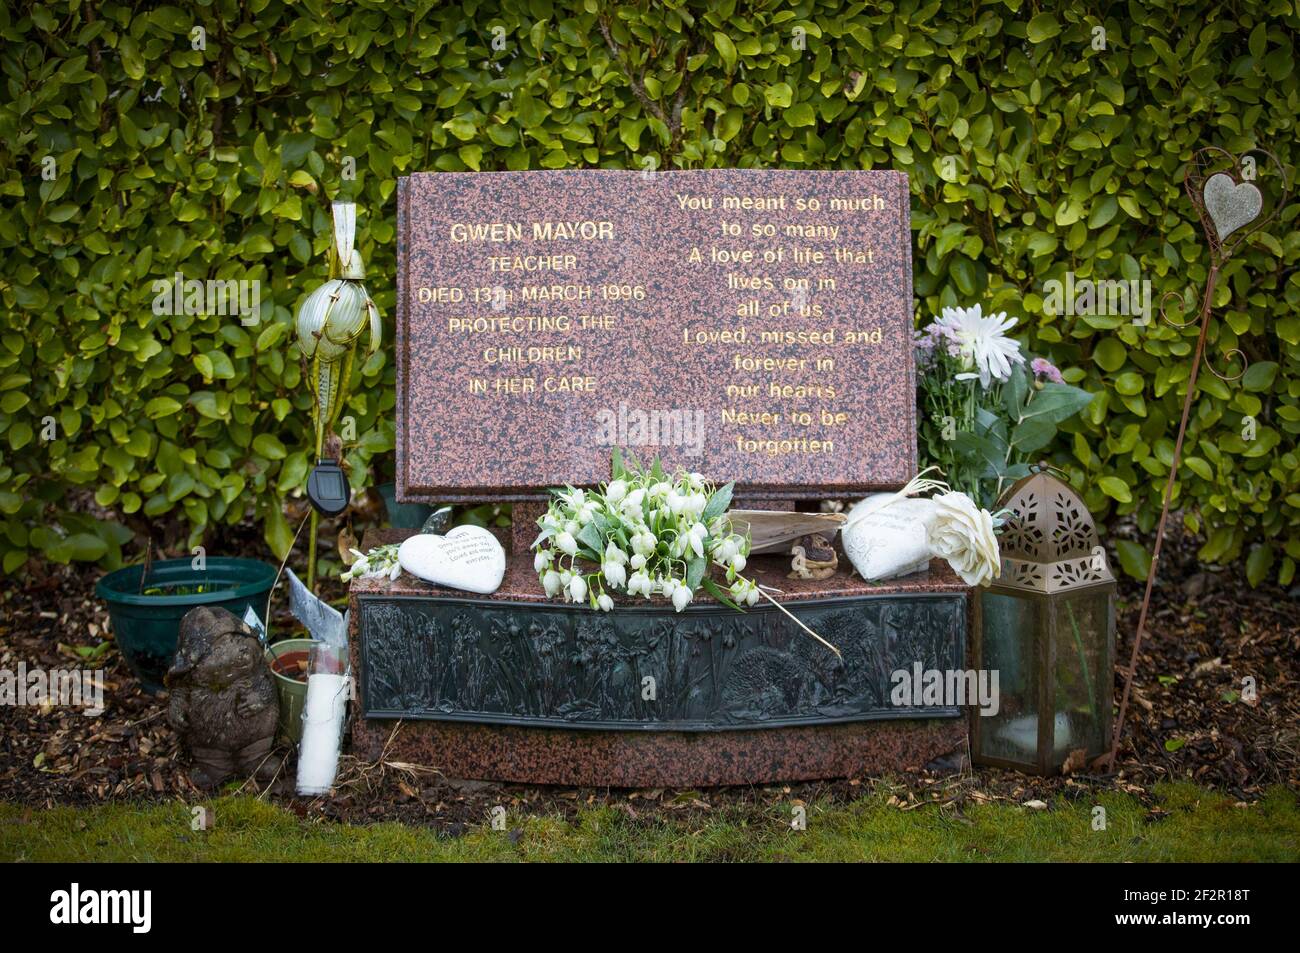 Das Grab des Lehrers Gwen Mayor im Garten der Erinnerung auf dem Dunblane Friedhof, vor dem 25th. Jahrestag des Dunblane Massakers am Samstag. Bilddatum: Freitag, 12. März 2021. Stockfoto